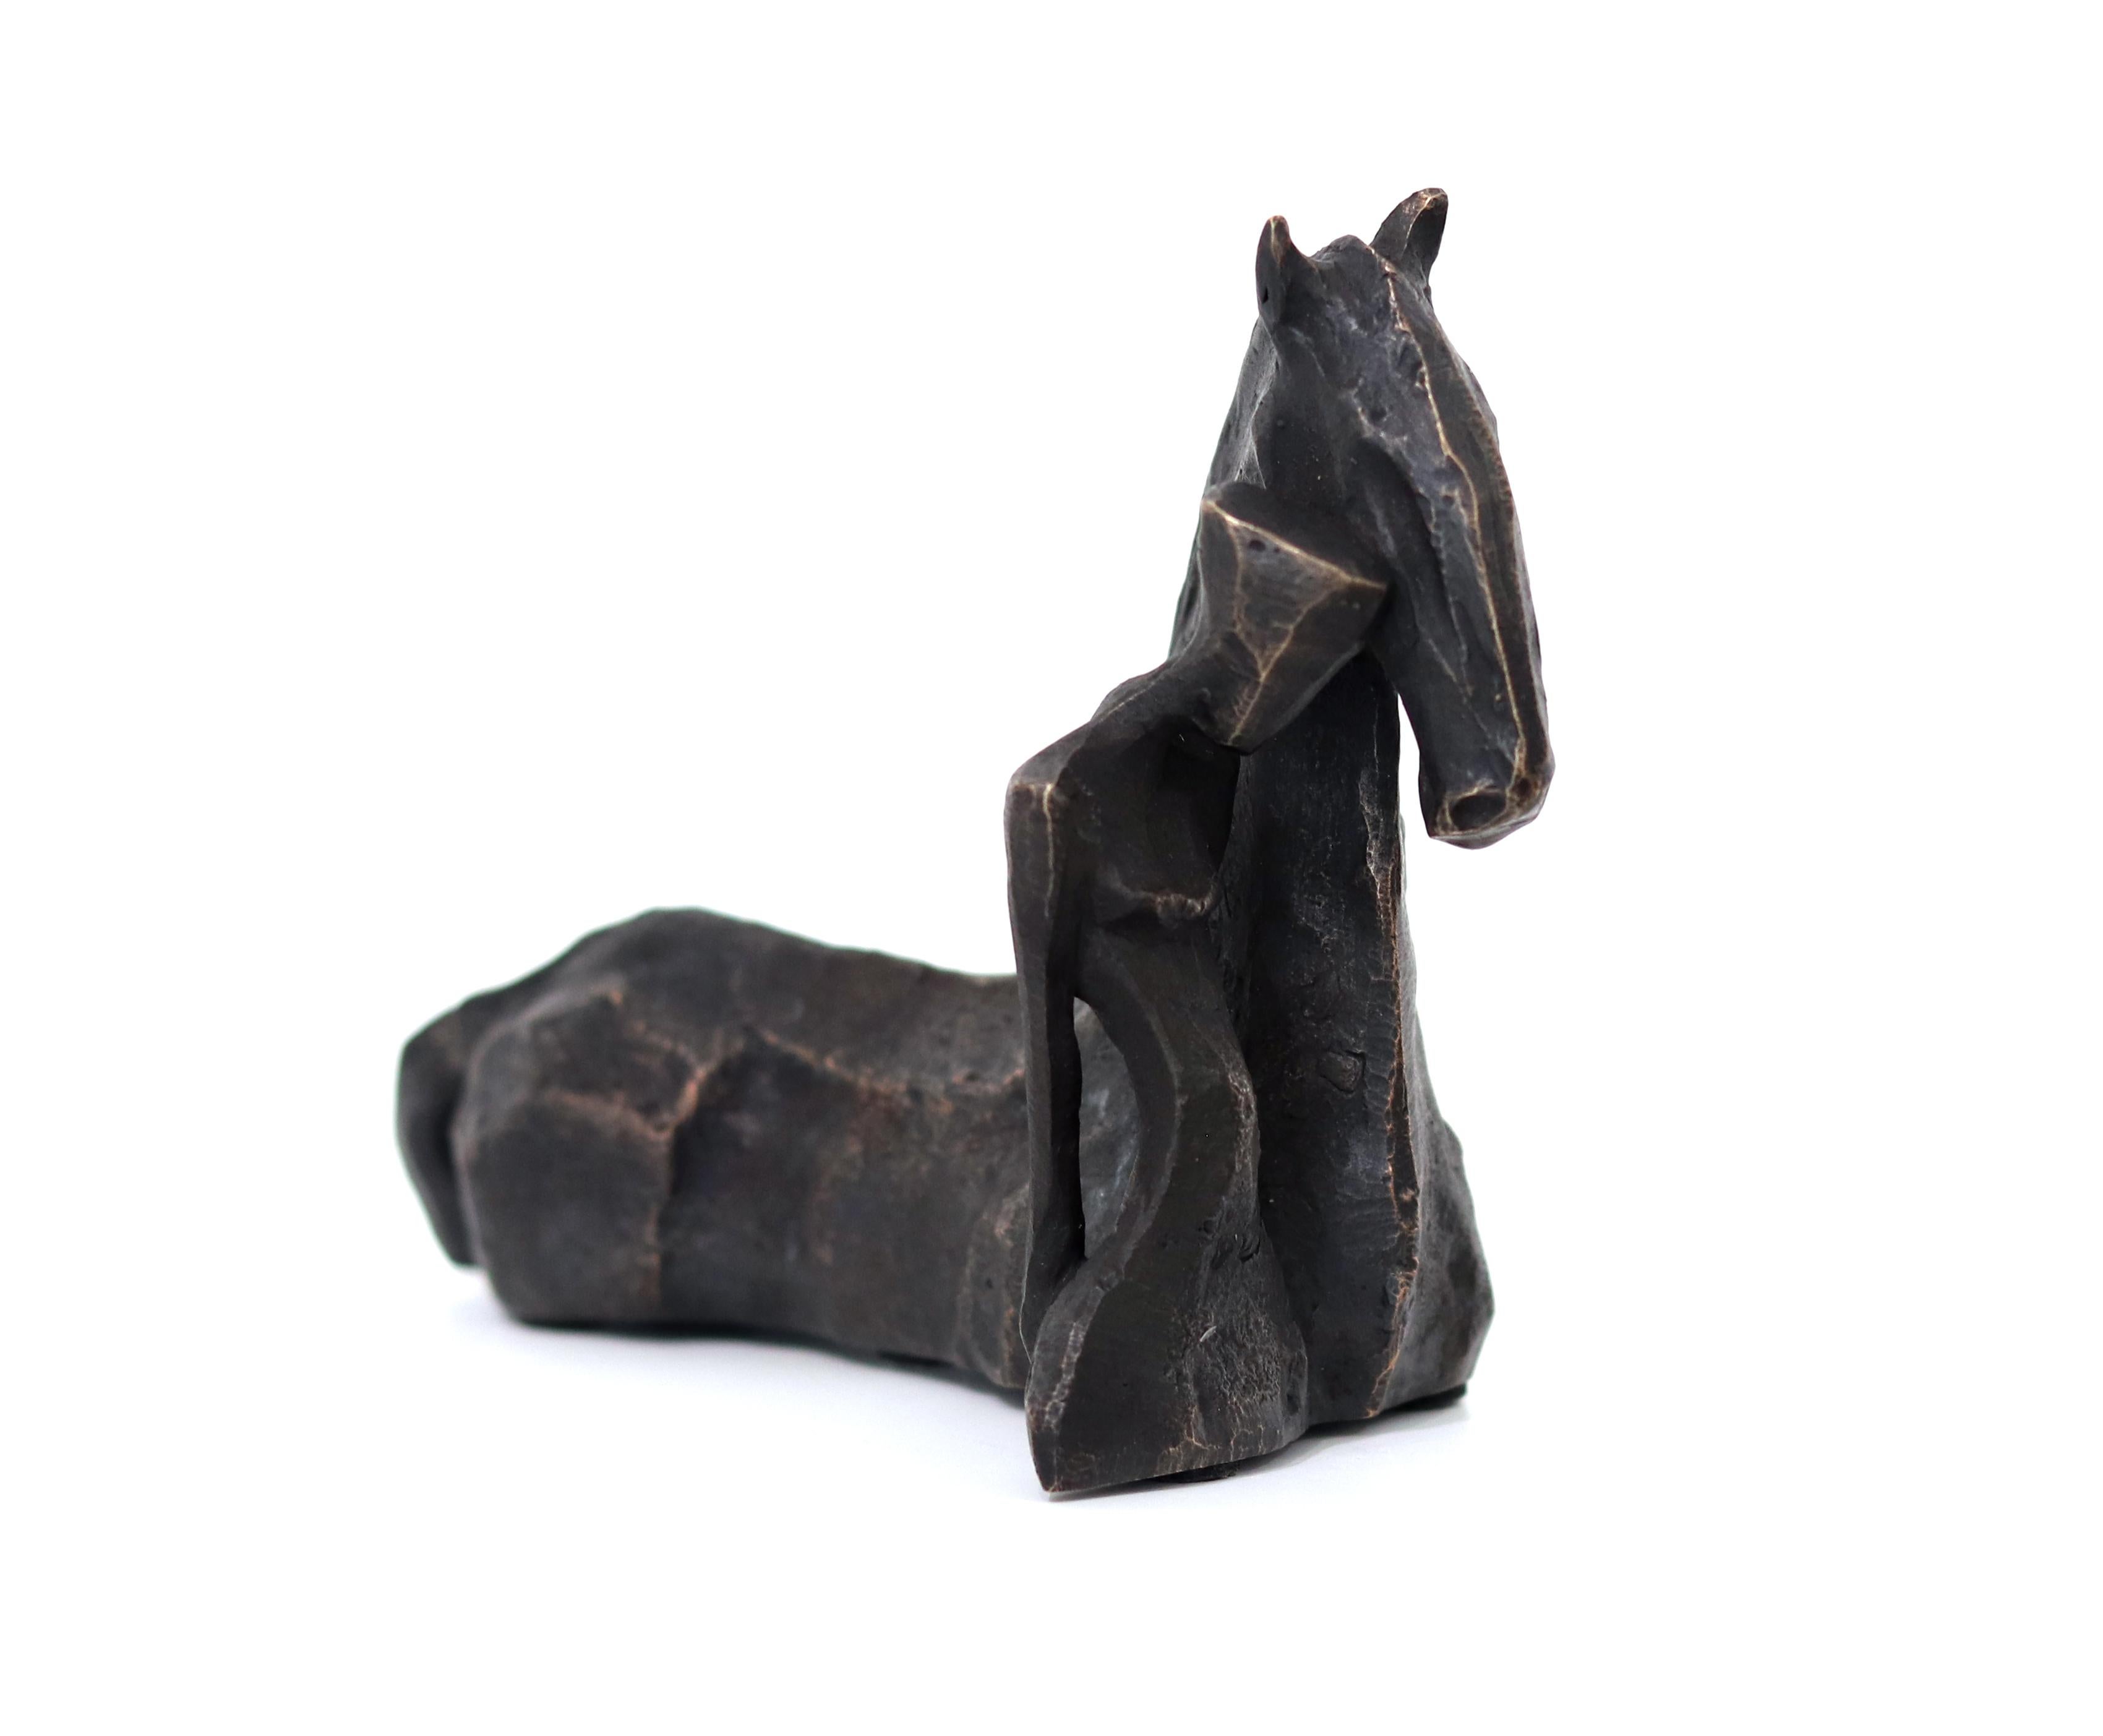 Nando Kallweit Figurative Sculpture – Susi Con Cavallo – Pferd und weibliche Figur, einzigartige kubistische Bronzeskulptur